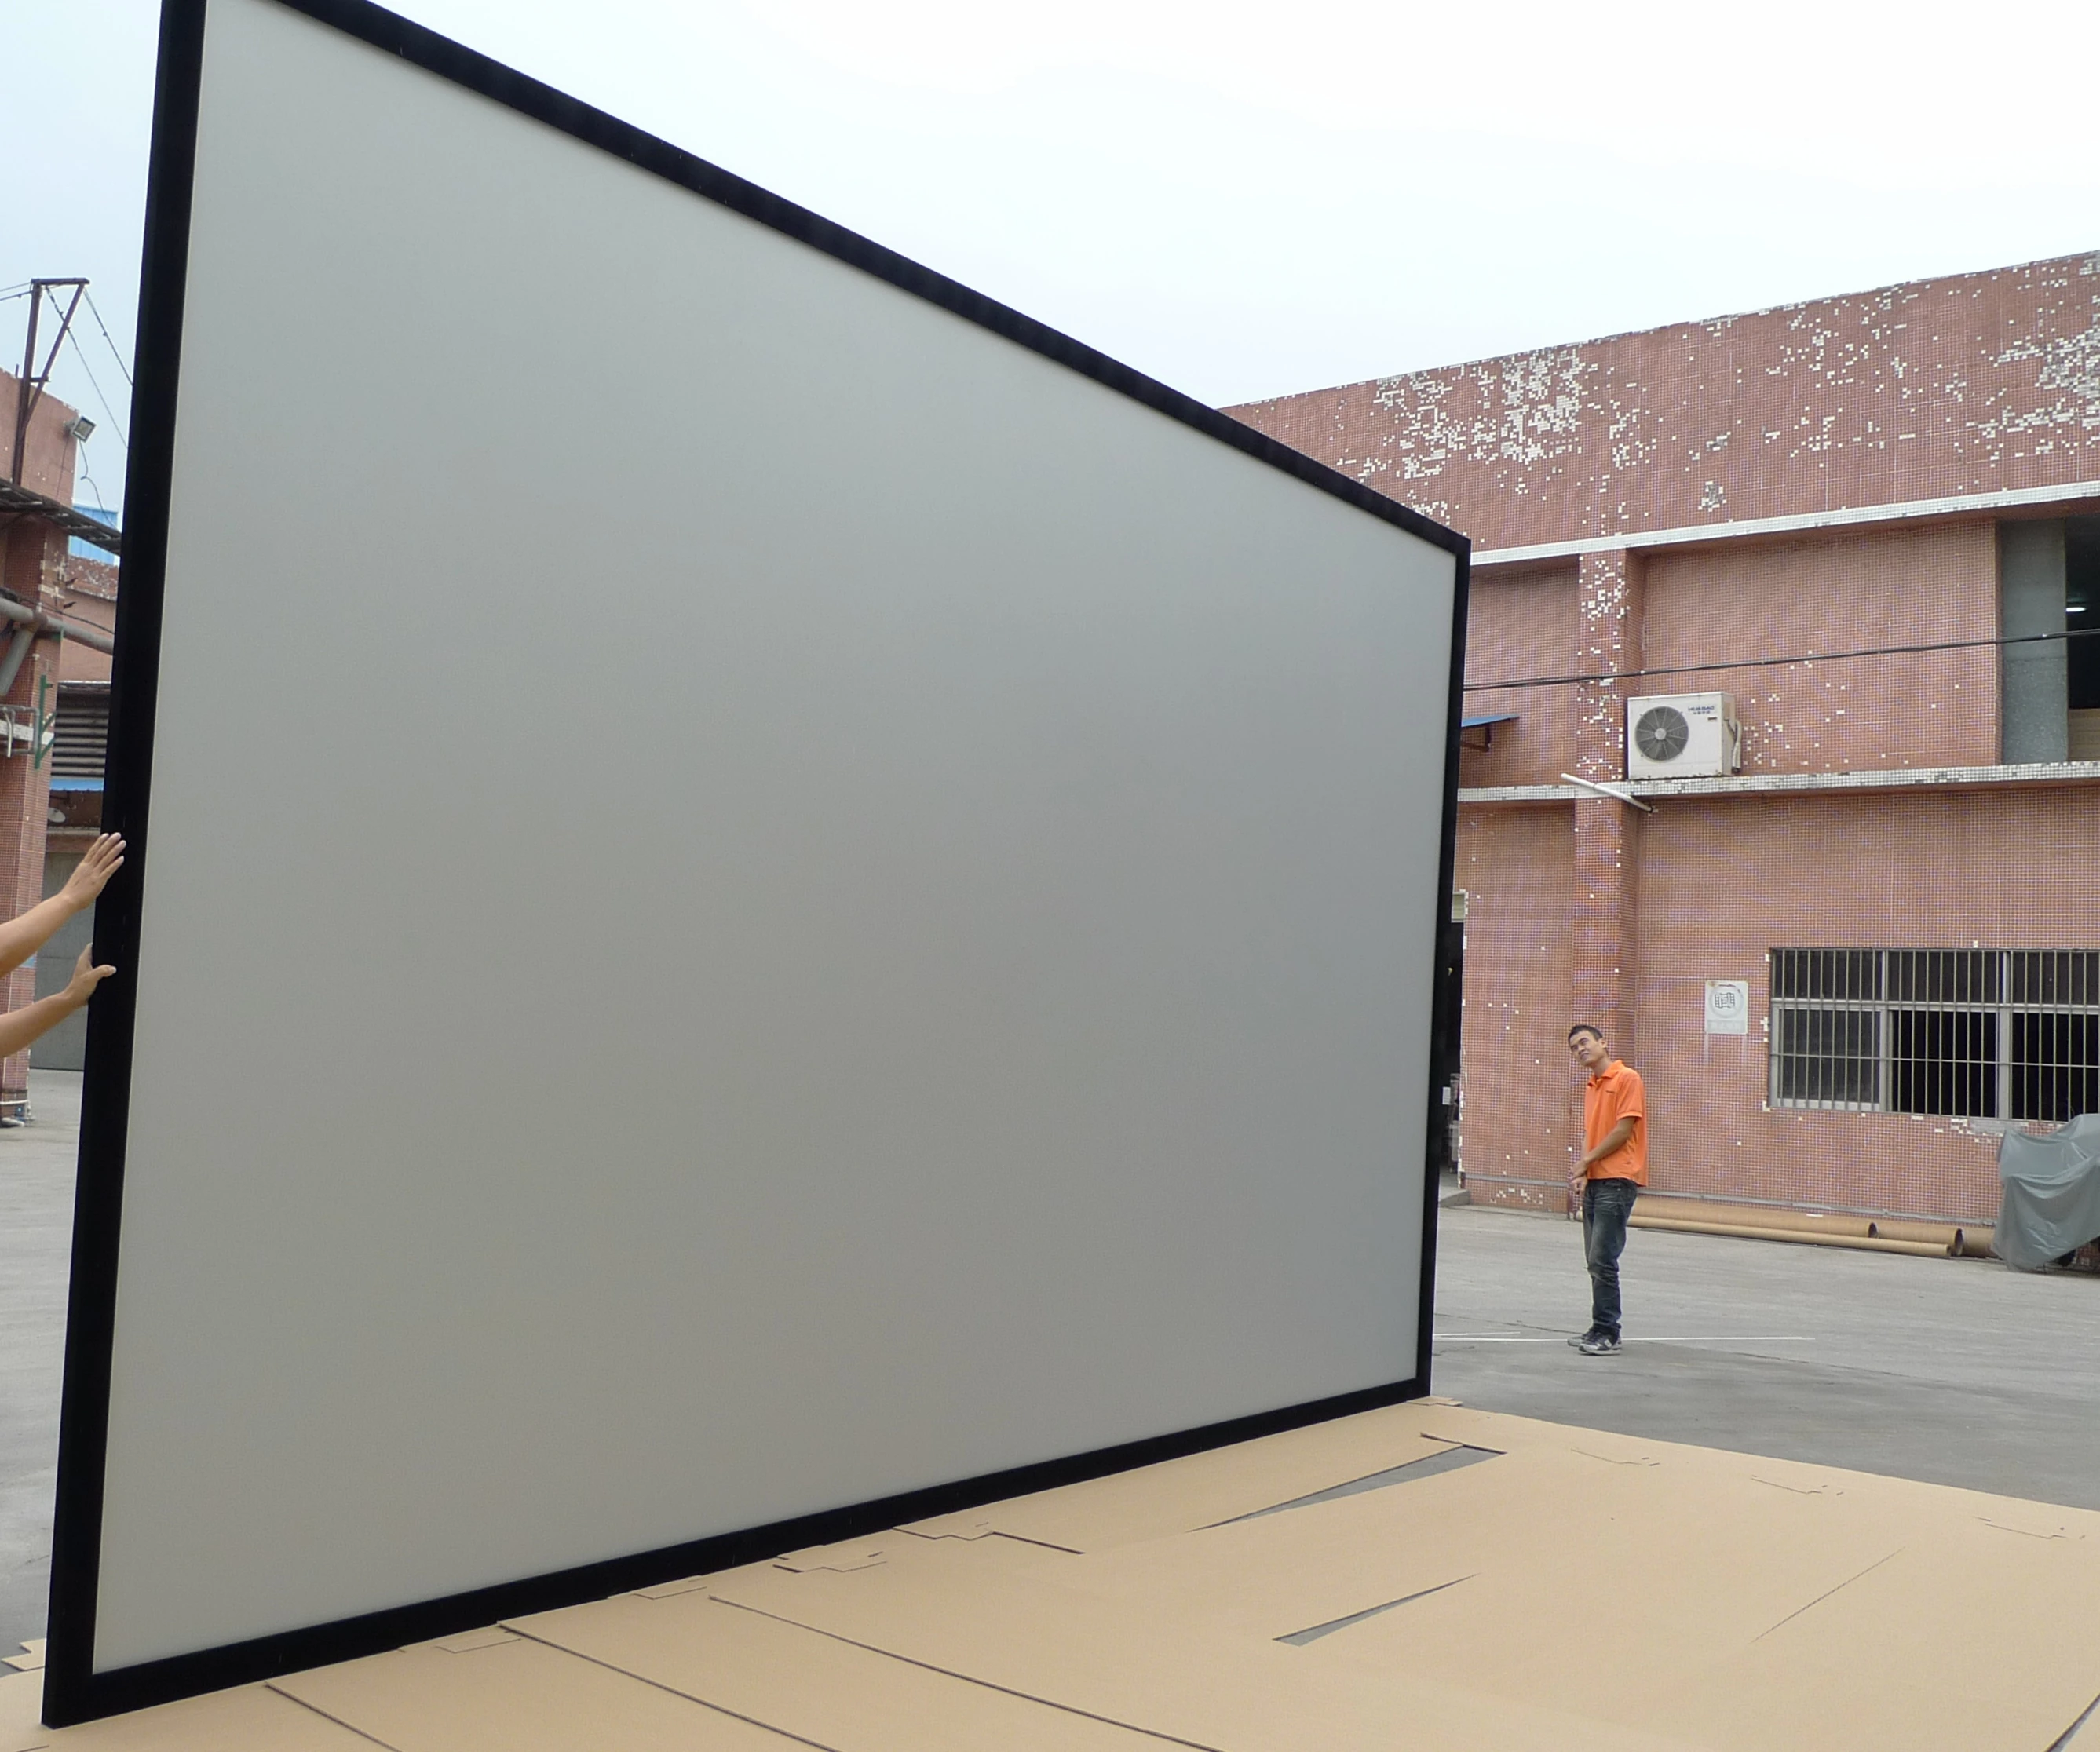 400 インチ固定枠投影スクリーン Tm サイズ Buy 400 インチ投影スクリーン 1080 1080p プロジェクター Screenblack 投影スクリーン生地 Pvc マットホワイト投影スクリーン生地 Product On Alibaba Com